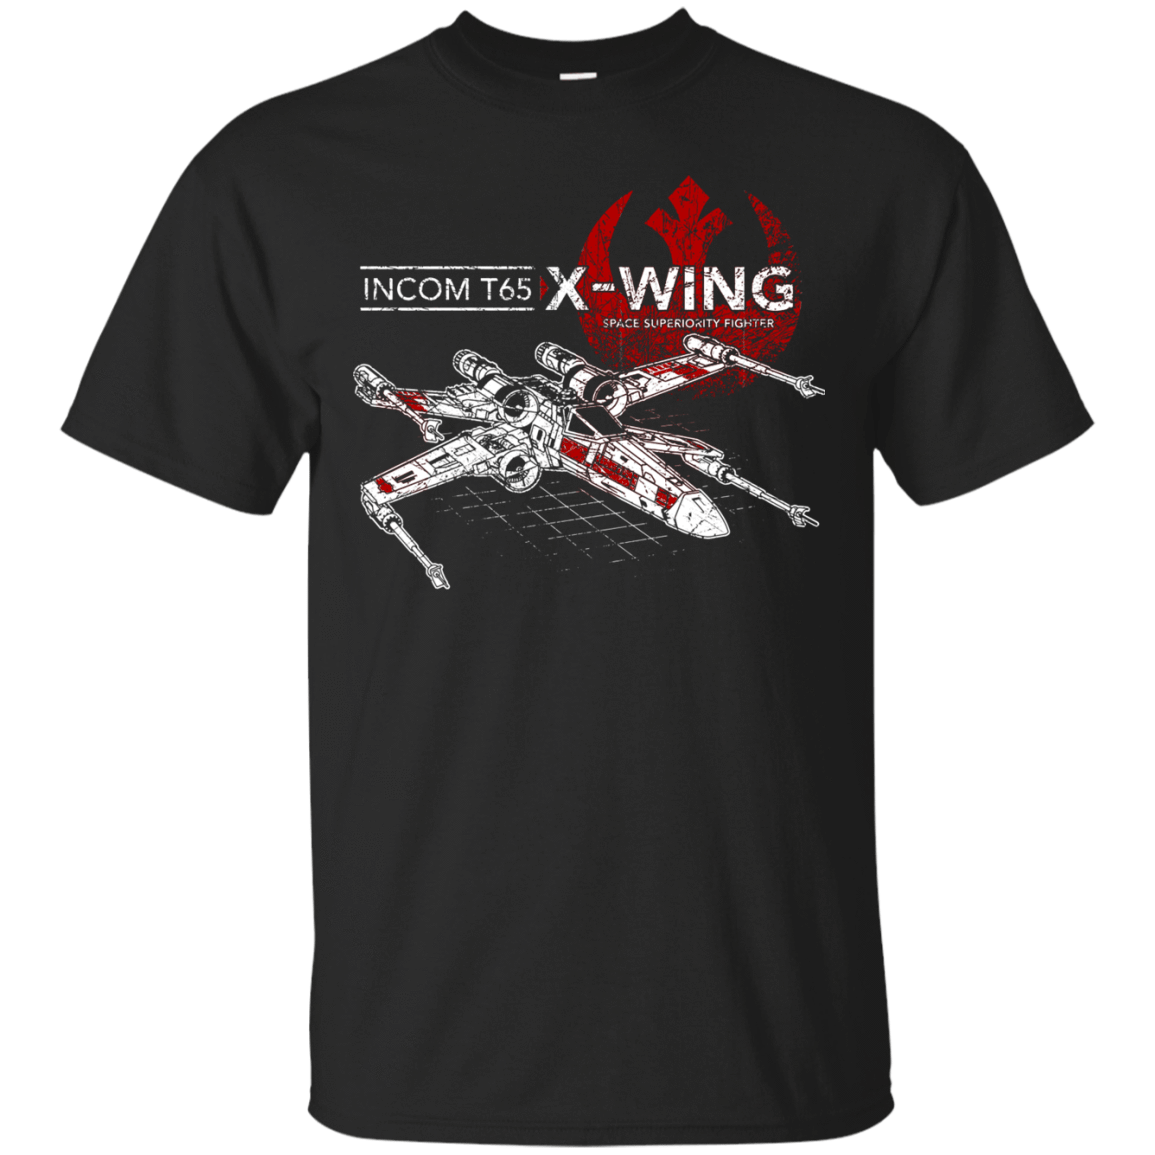 T-Shirts Black / S T-65 X-Wing T-Shirt